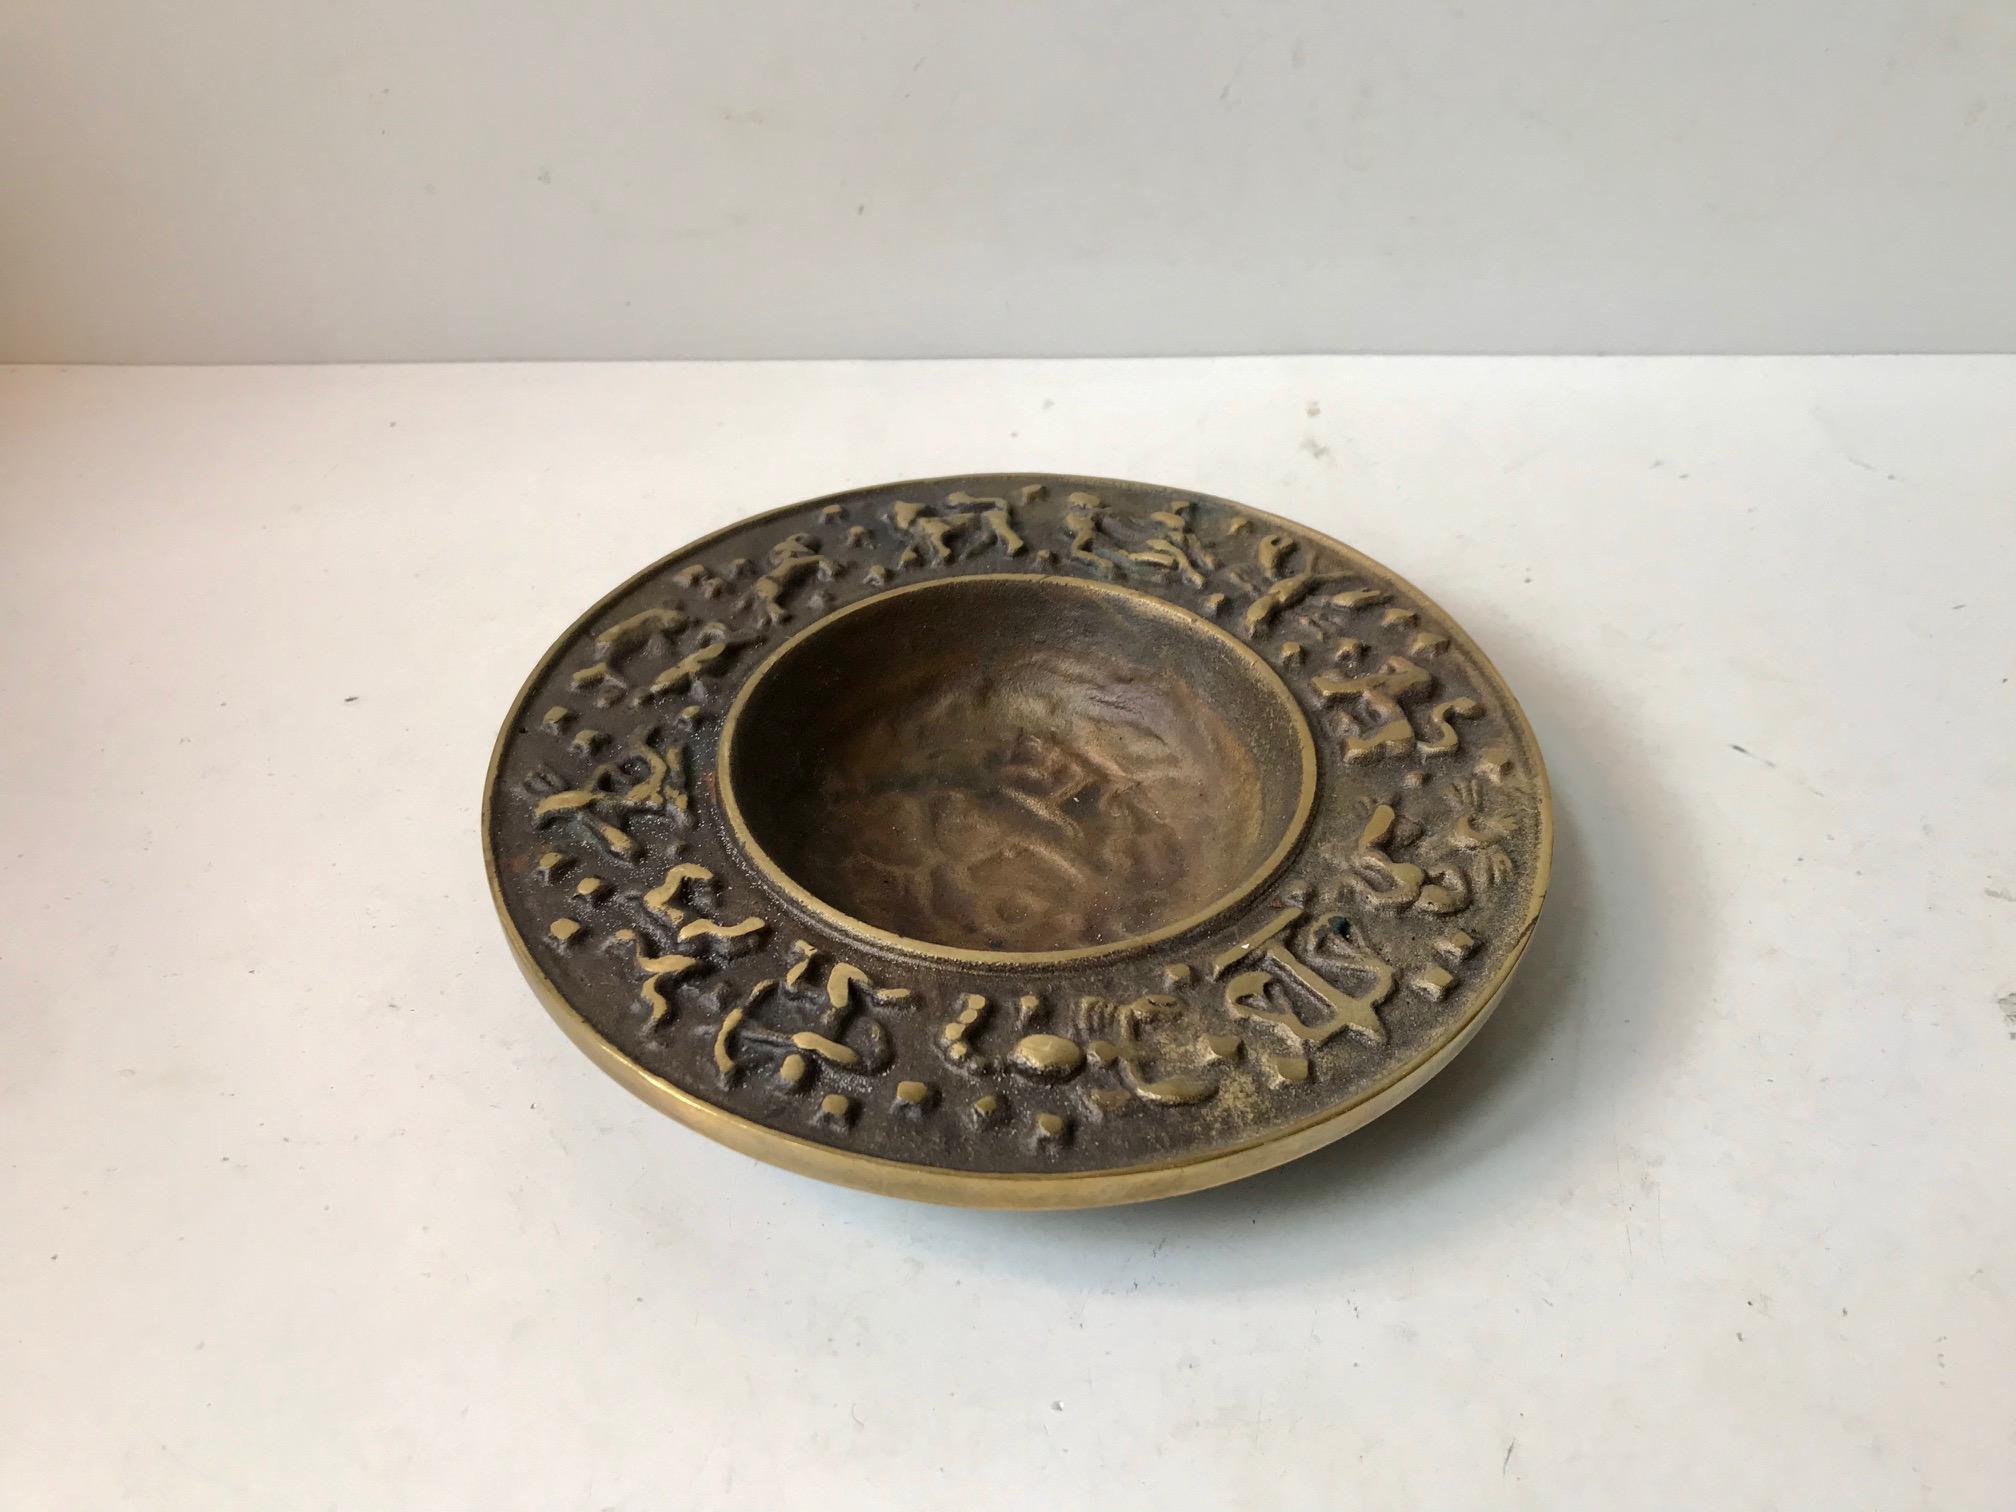 Schale/Aschenbecher aus Bronze mit Sternzeichenmotiven, hergestellt und entworfen von Nordisk Malm in Dänemark in den späten 1940er Jahren